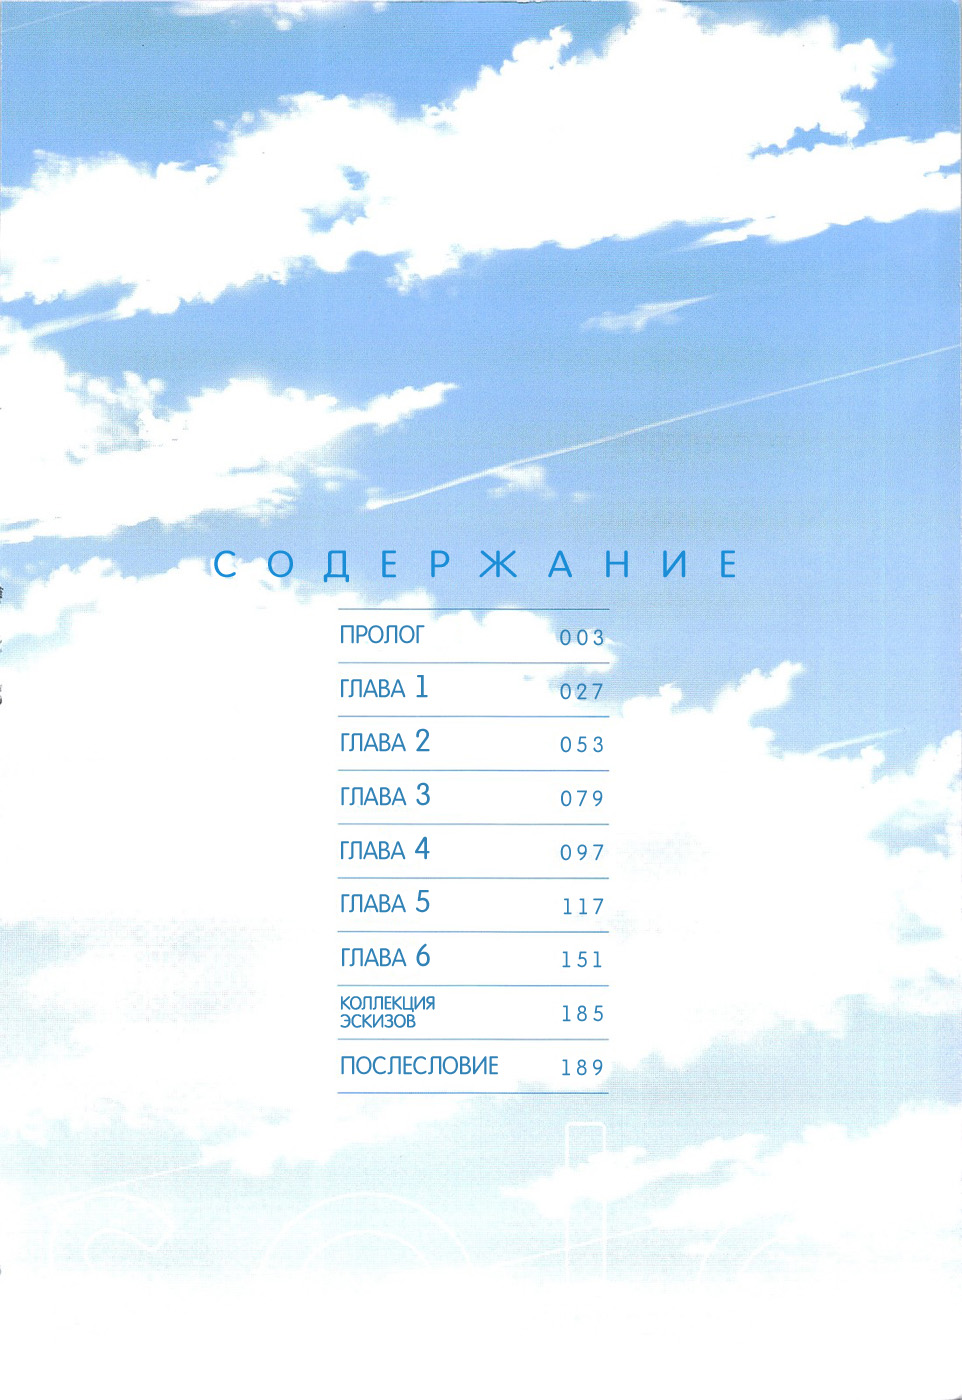 Облако 99 глава на русском